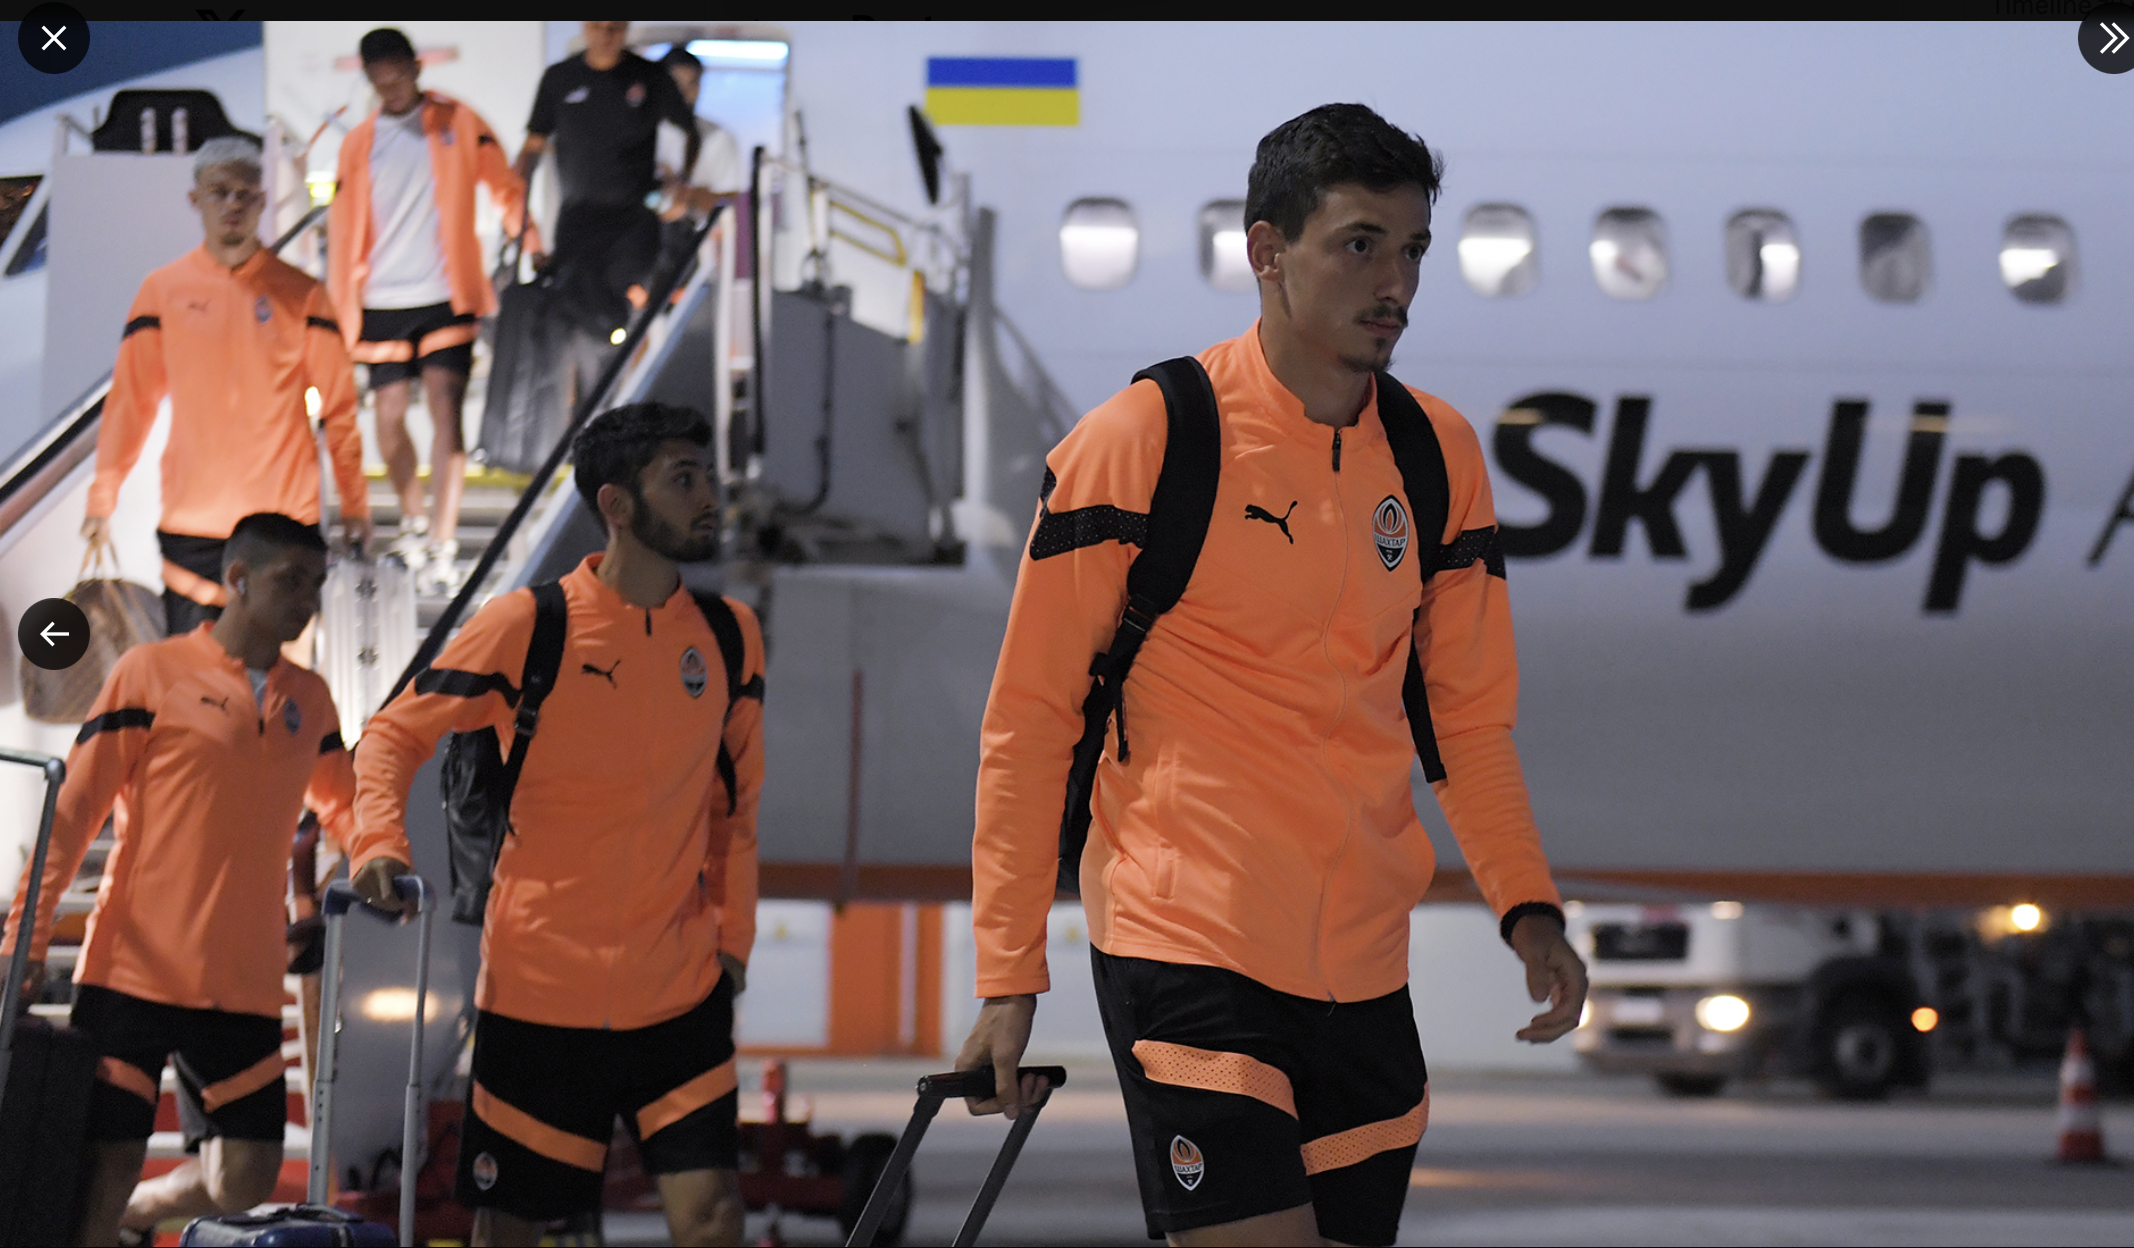 Spieler des FC Shakhtar Donezk verlassen ein Flugzeug